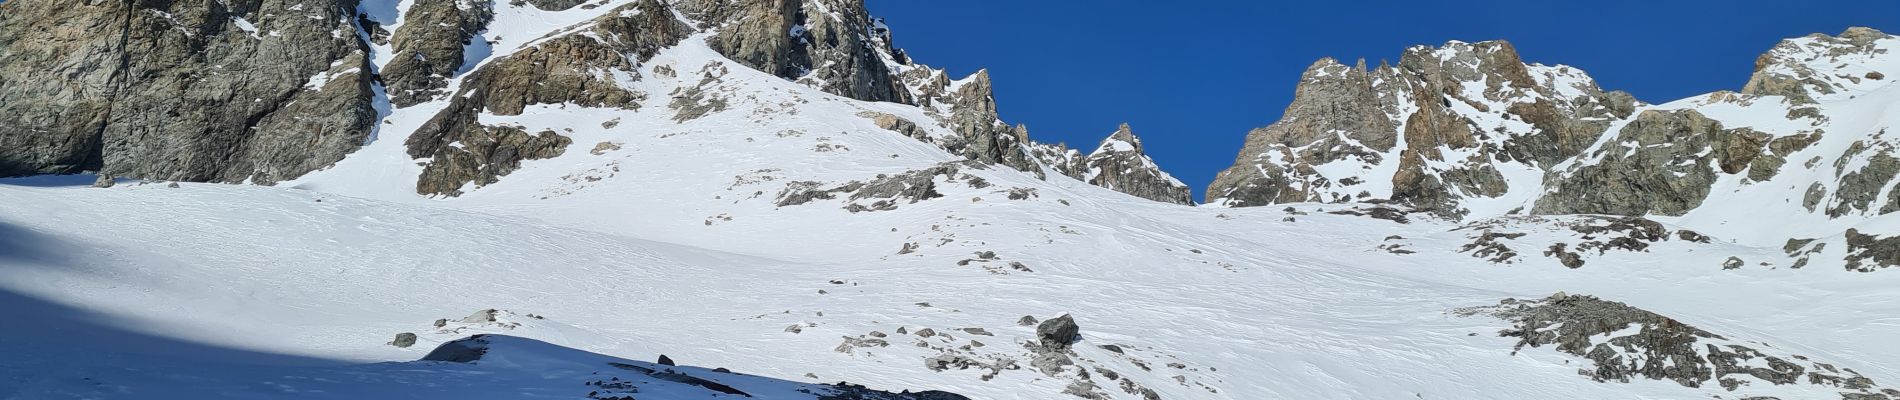 Trail Touring skiing Le Monêtier-les-Bains - glacier du dome de monetier  - Photo